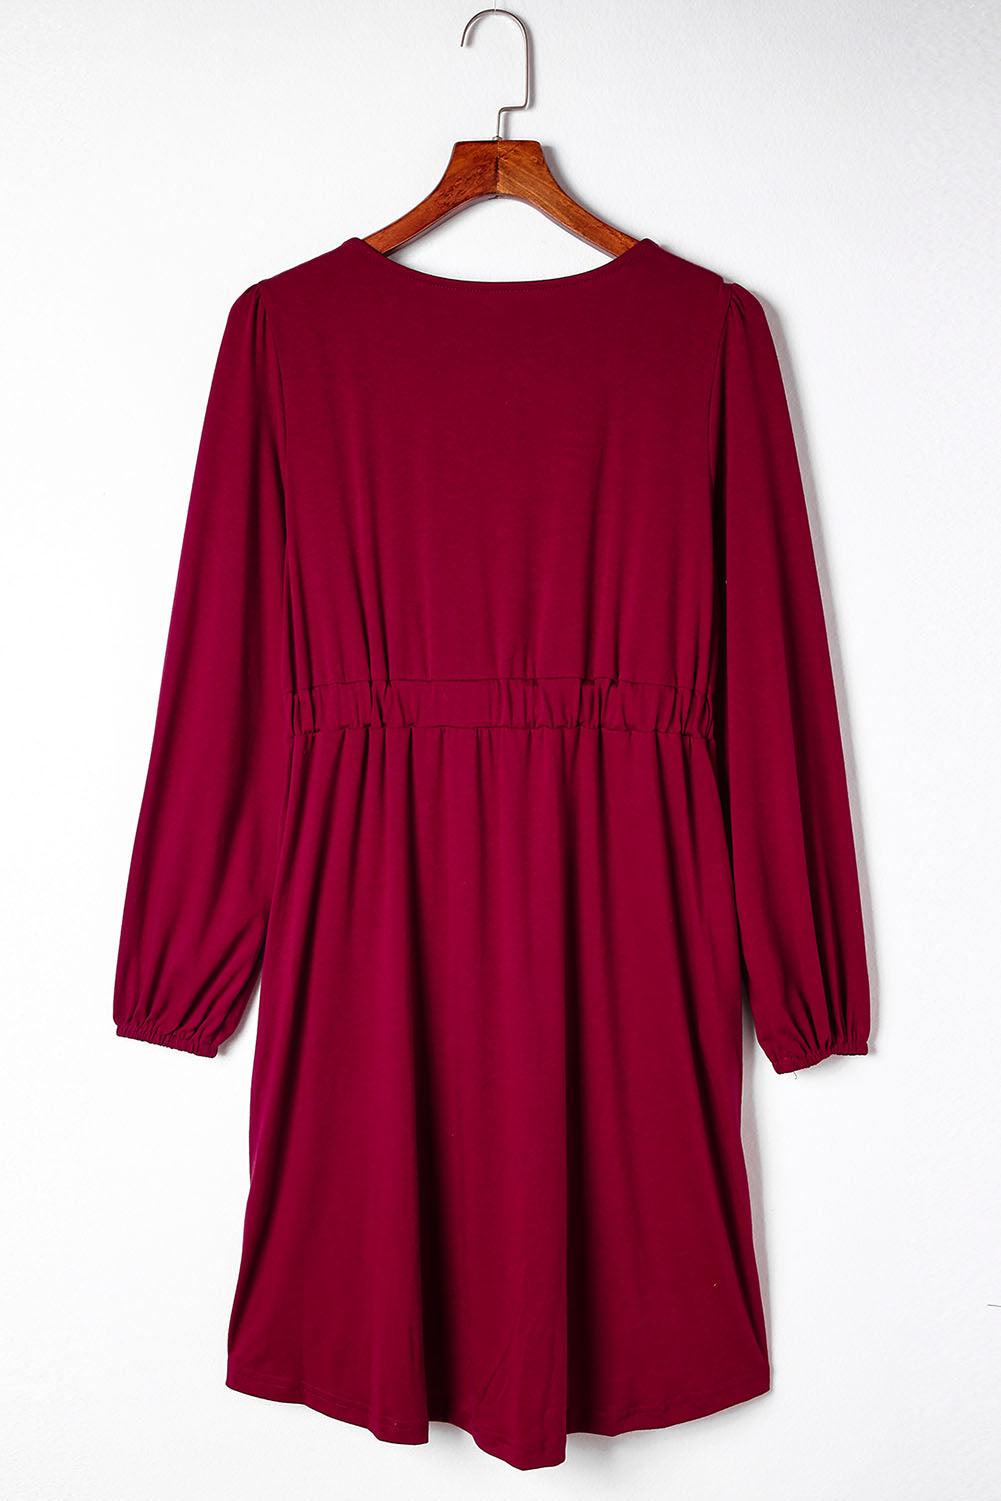 Feuriges, rotes, langärmliges Kleid mit Knöpfen und hoher Taille